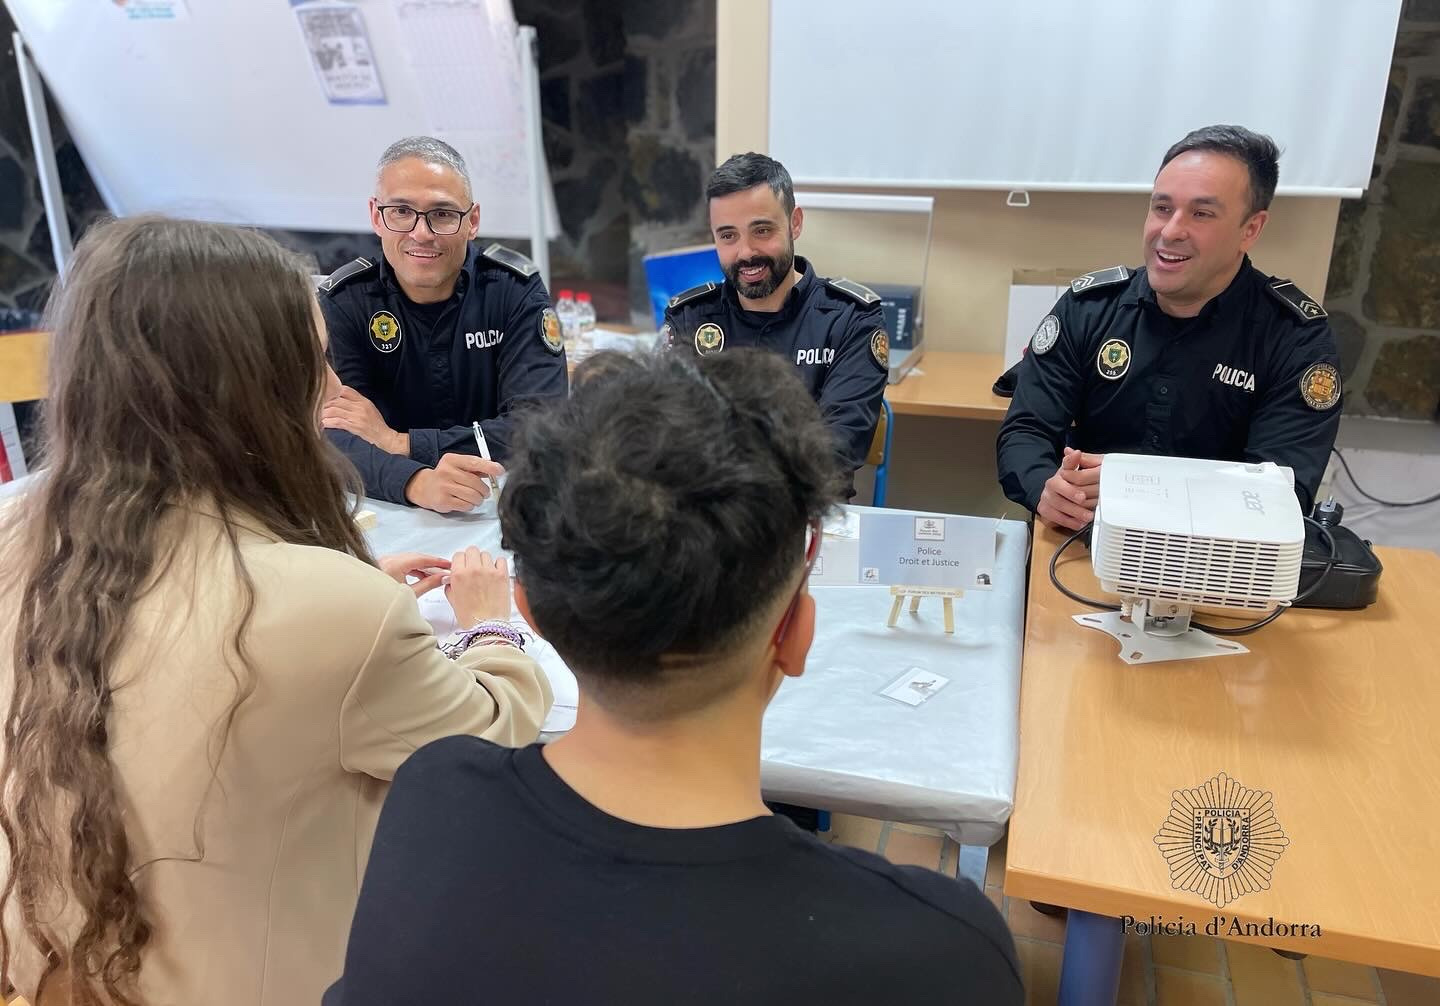 La Policia participa en el 12è Fòrum dels oficis organitzat pel Lycée Comte de Foix